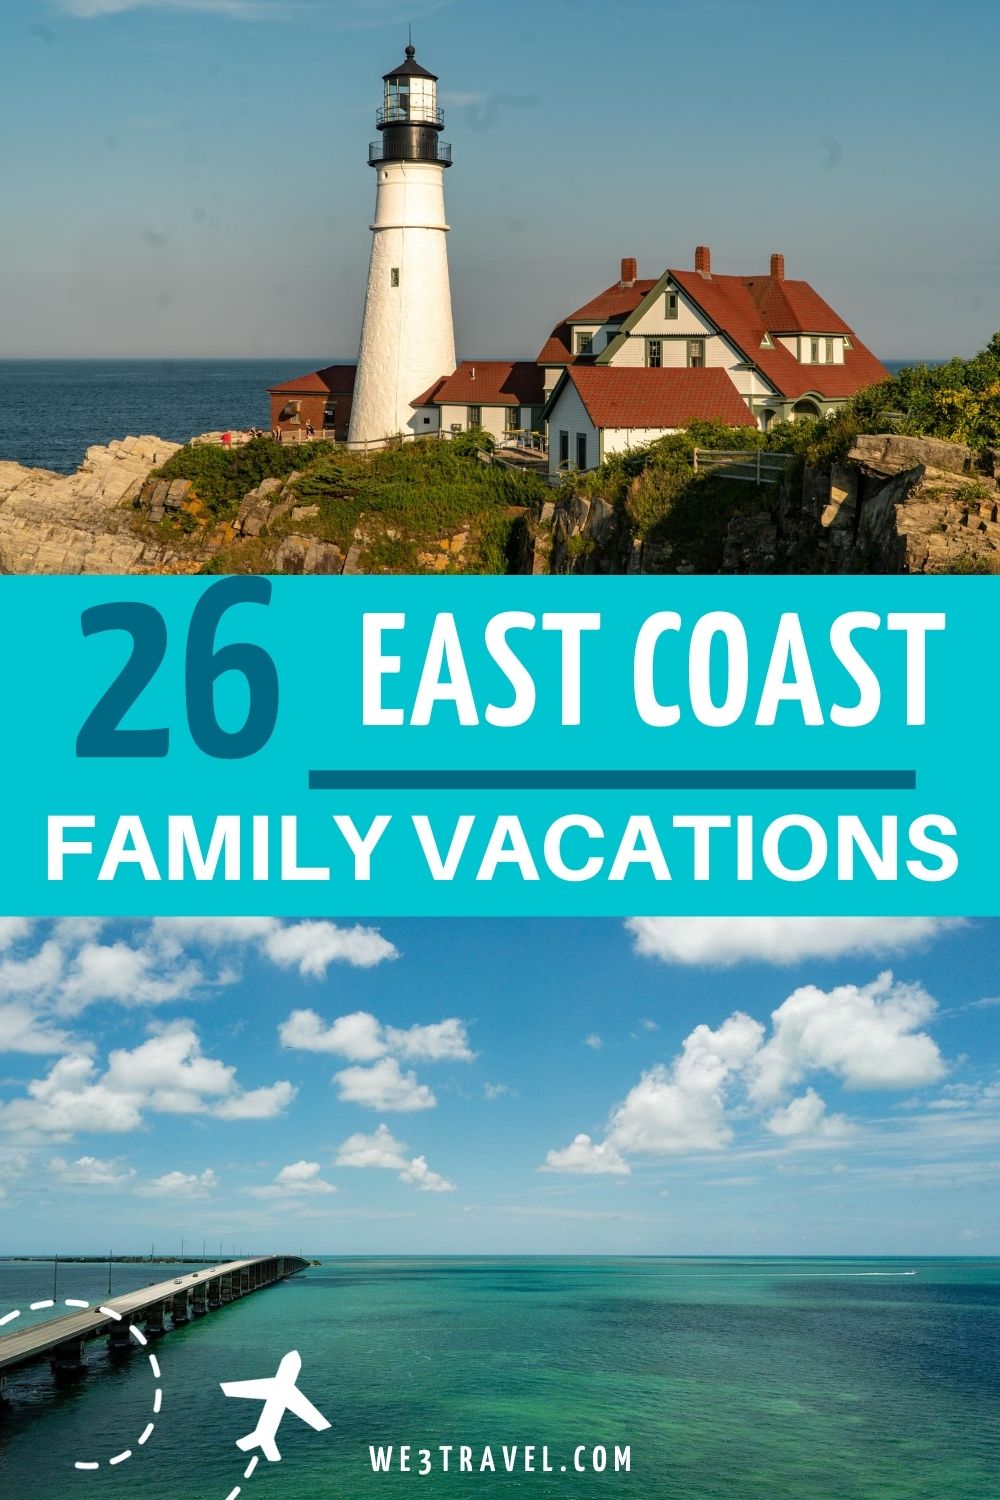 26 East Coast family vacations